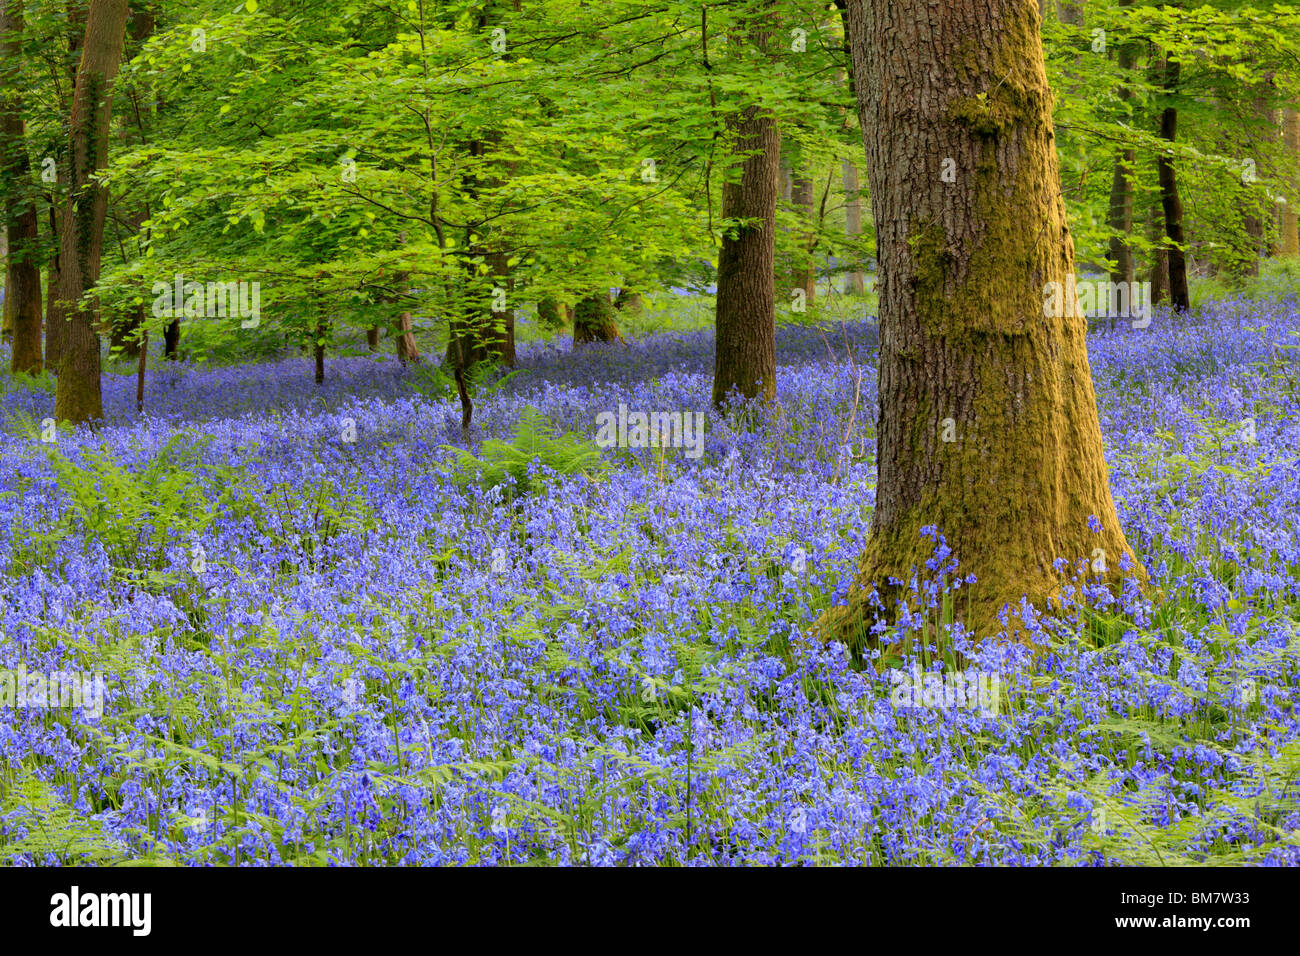 Alfombra clásica de inglés las campánulas azules en el camino entre Soudley y Blakeney en el Bosque de Dean, Gloucestershire, Reino Unido Foto de stock